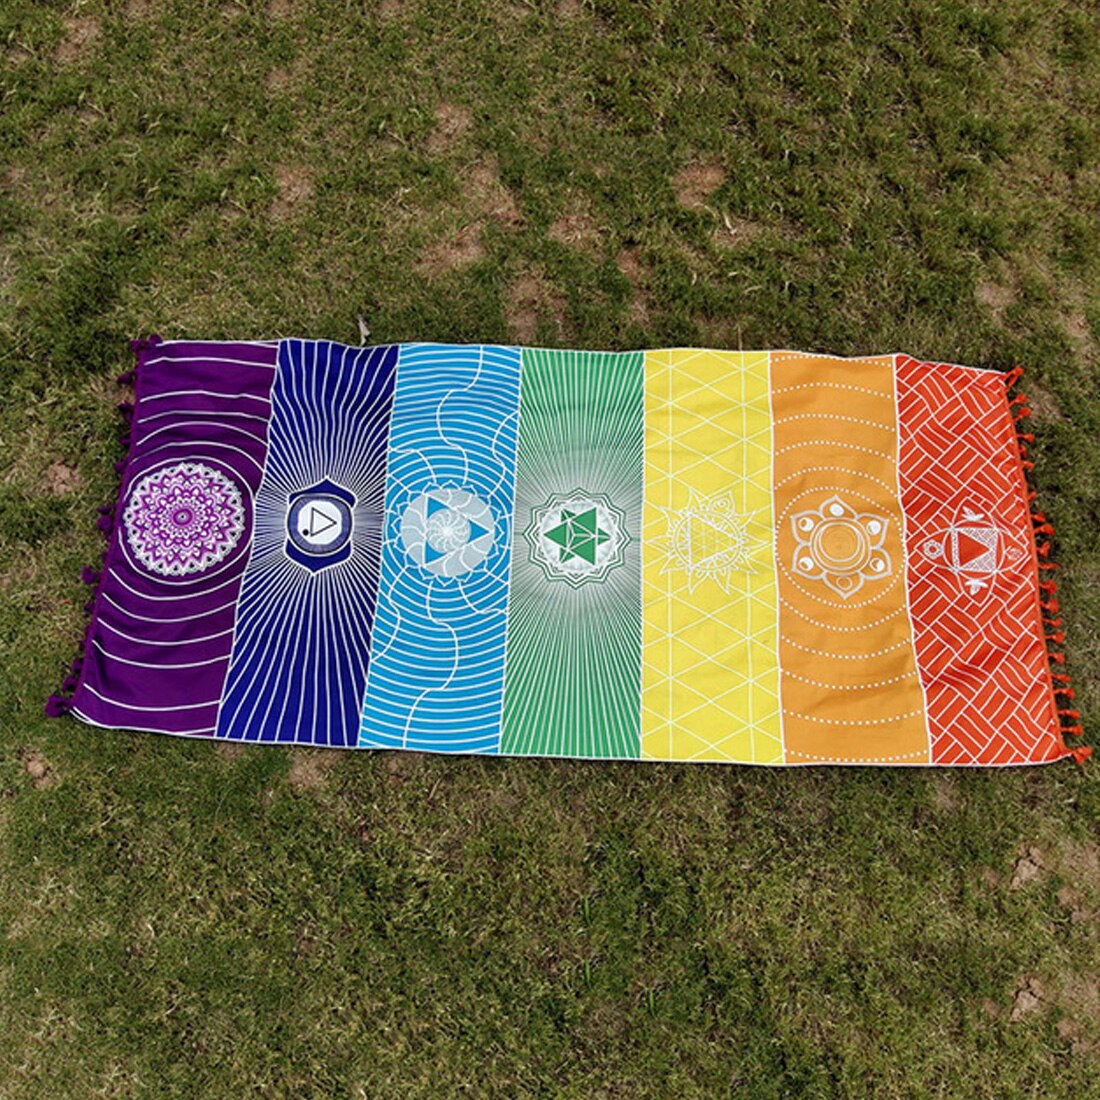 75*150 cm/150*150 cm BeddingOutlet 7 Chakra Regenboog Strepen Strandlaken Voor Volwassenen Mandala Deken bohemian Tapijt Yoga Mat